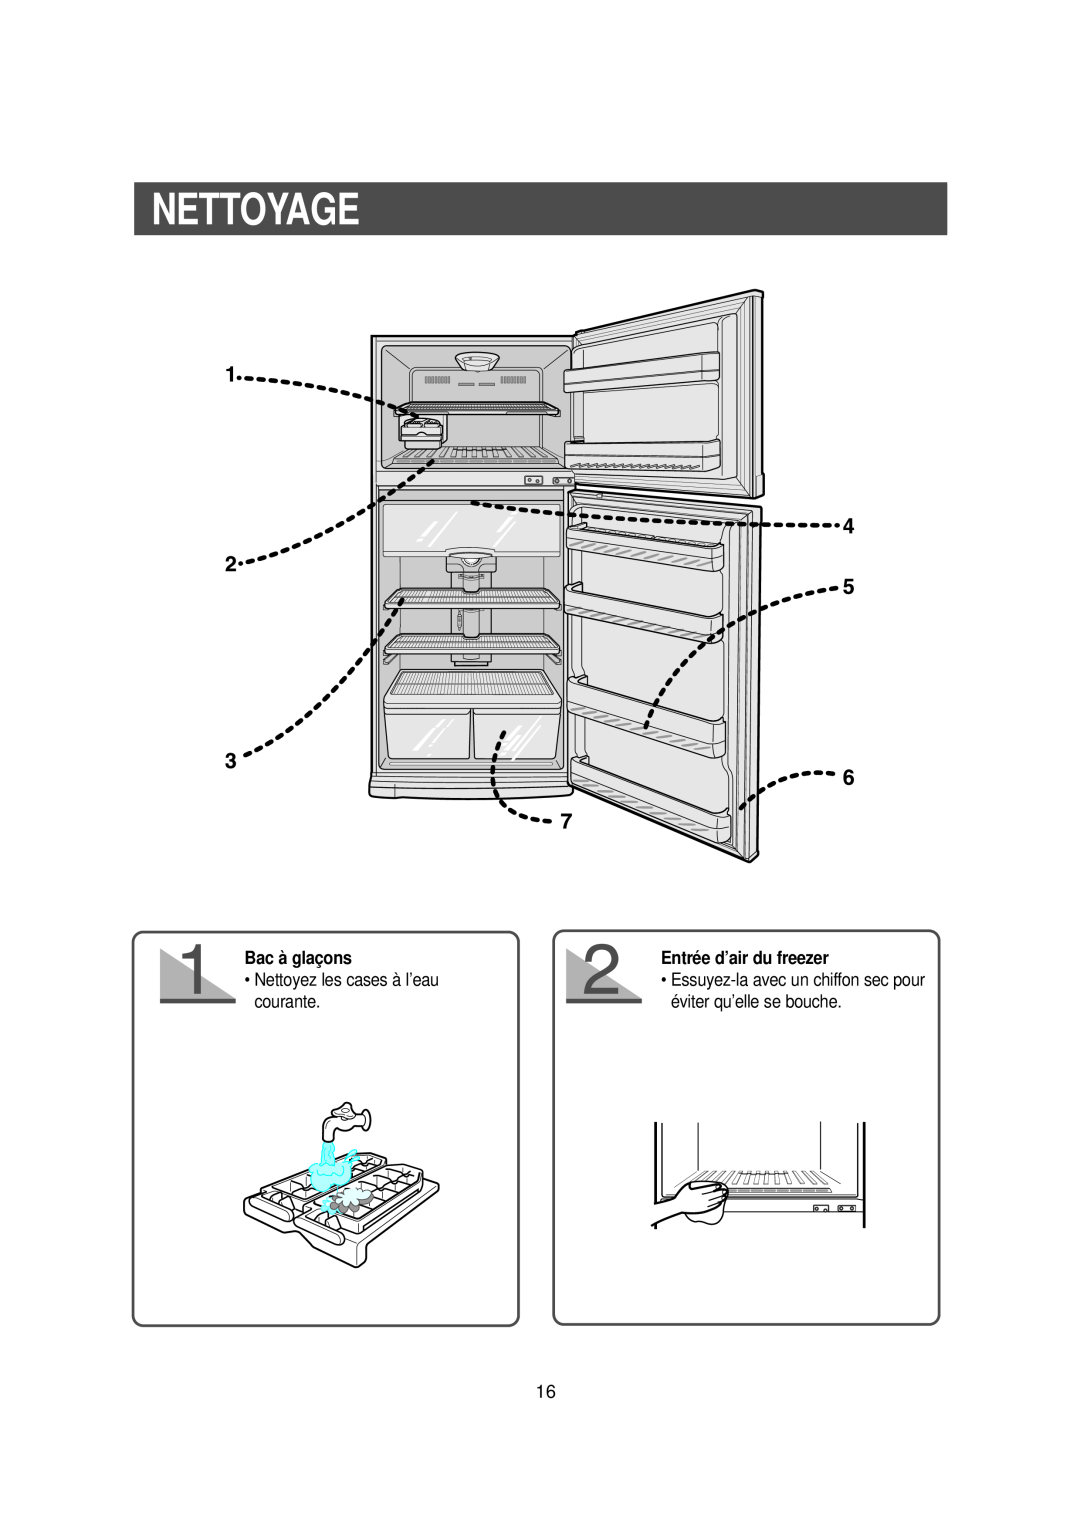 Samsung DA99-00477C manual Nettoyage, Bac à glaçons, Entrée d’air du freezer 